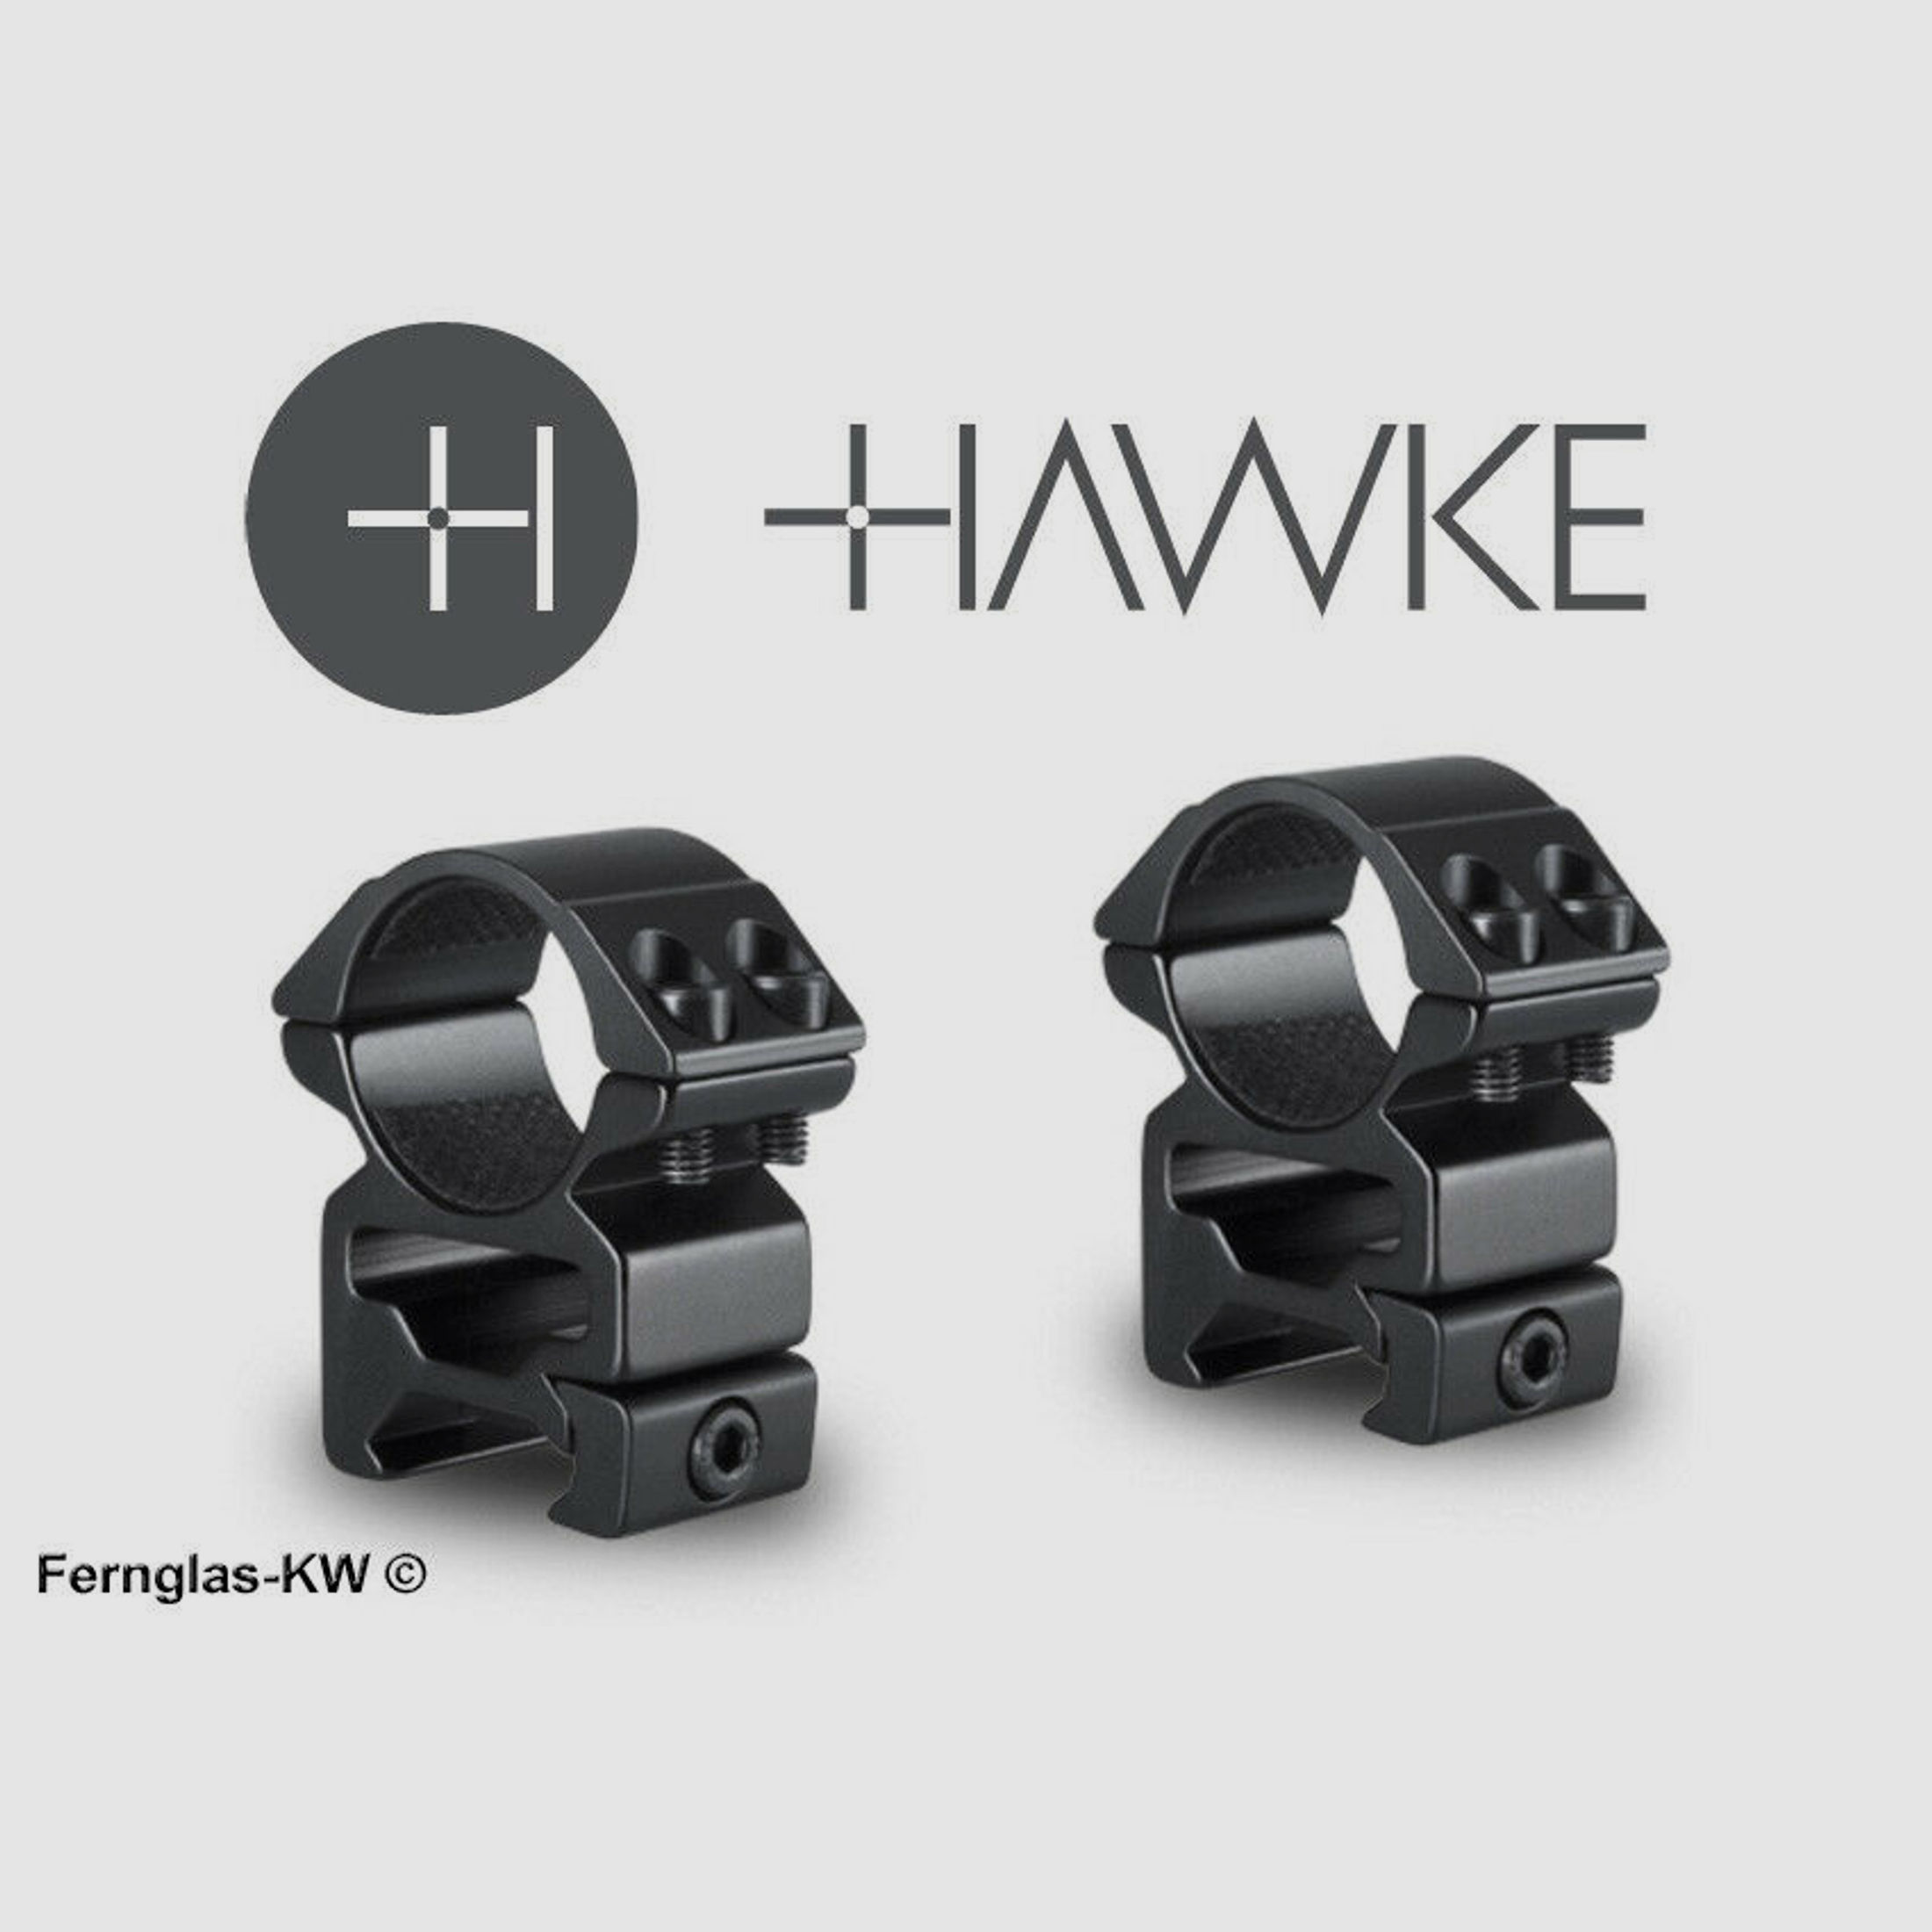 HAWKE 22114 25,4mm Ringmontage Hoch für Weaver Schiene Zielfernrohr